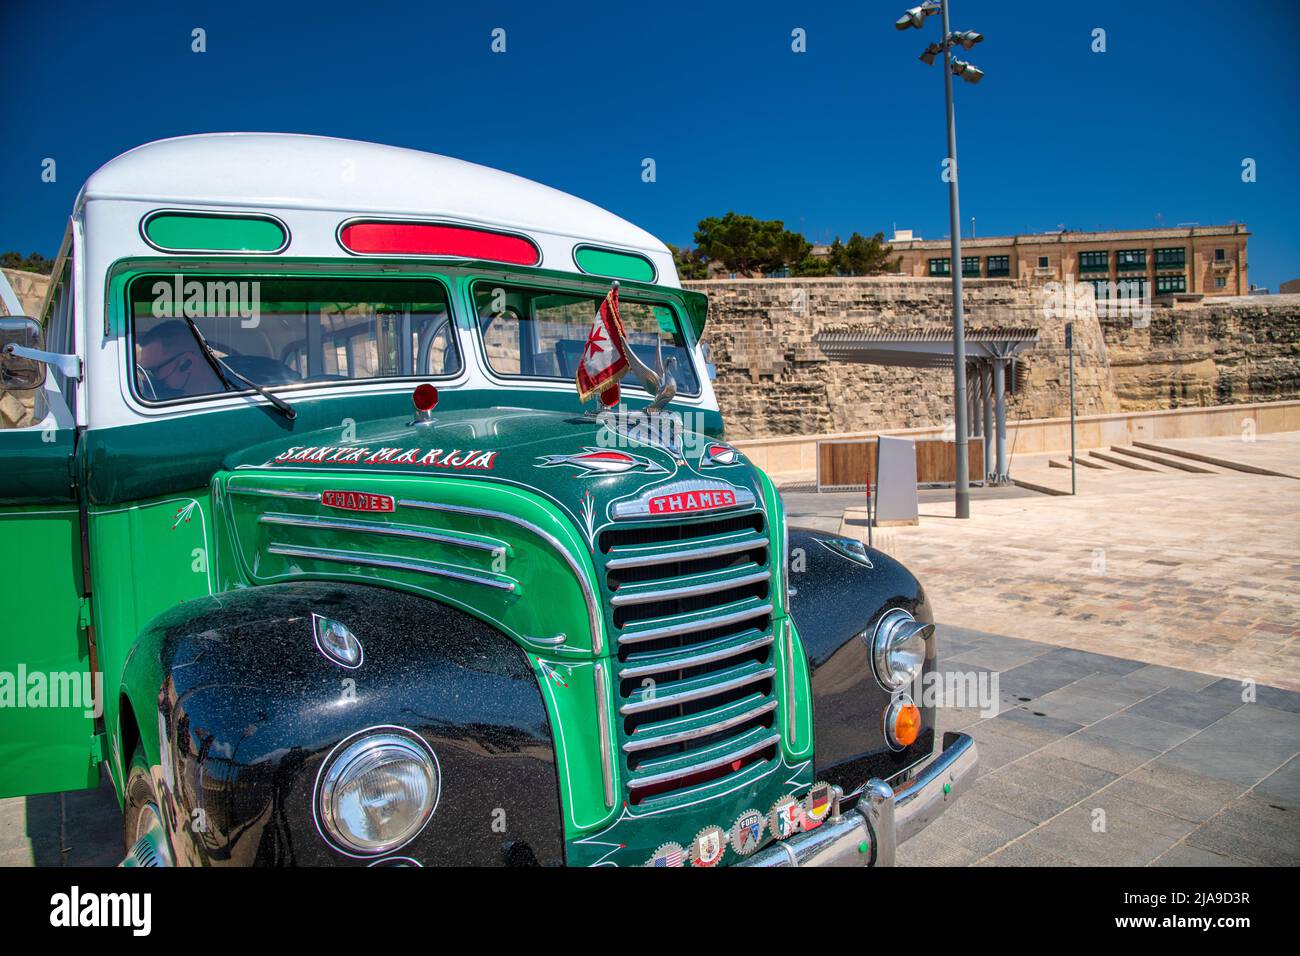 Valletta, Malta - April 17, 2022: Green touristic bus in the city center. Stock Photo